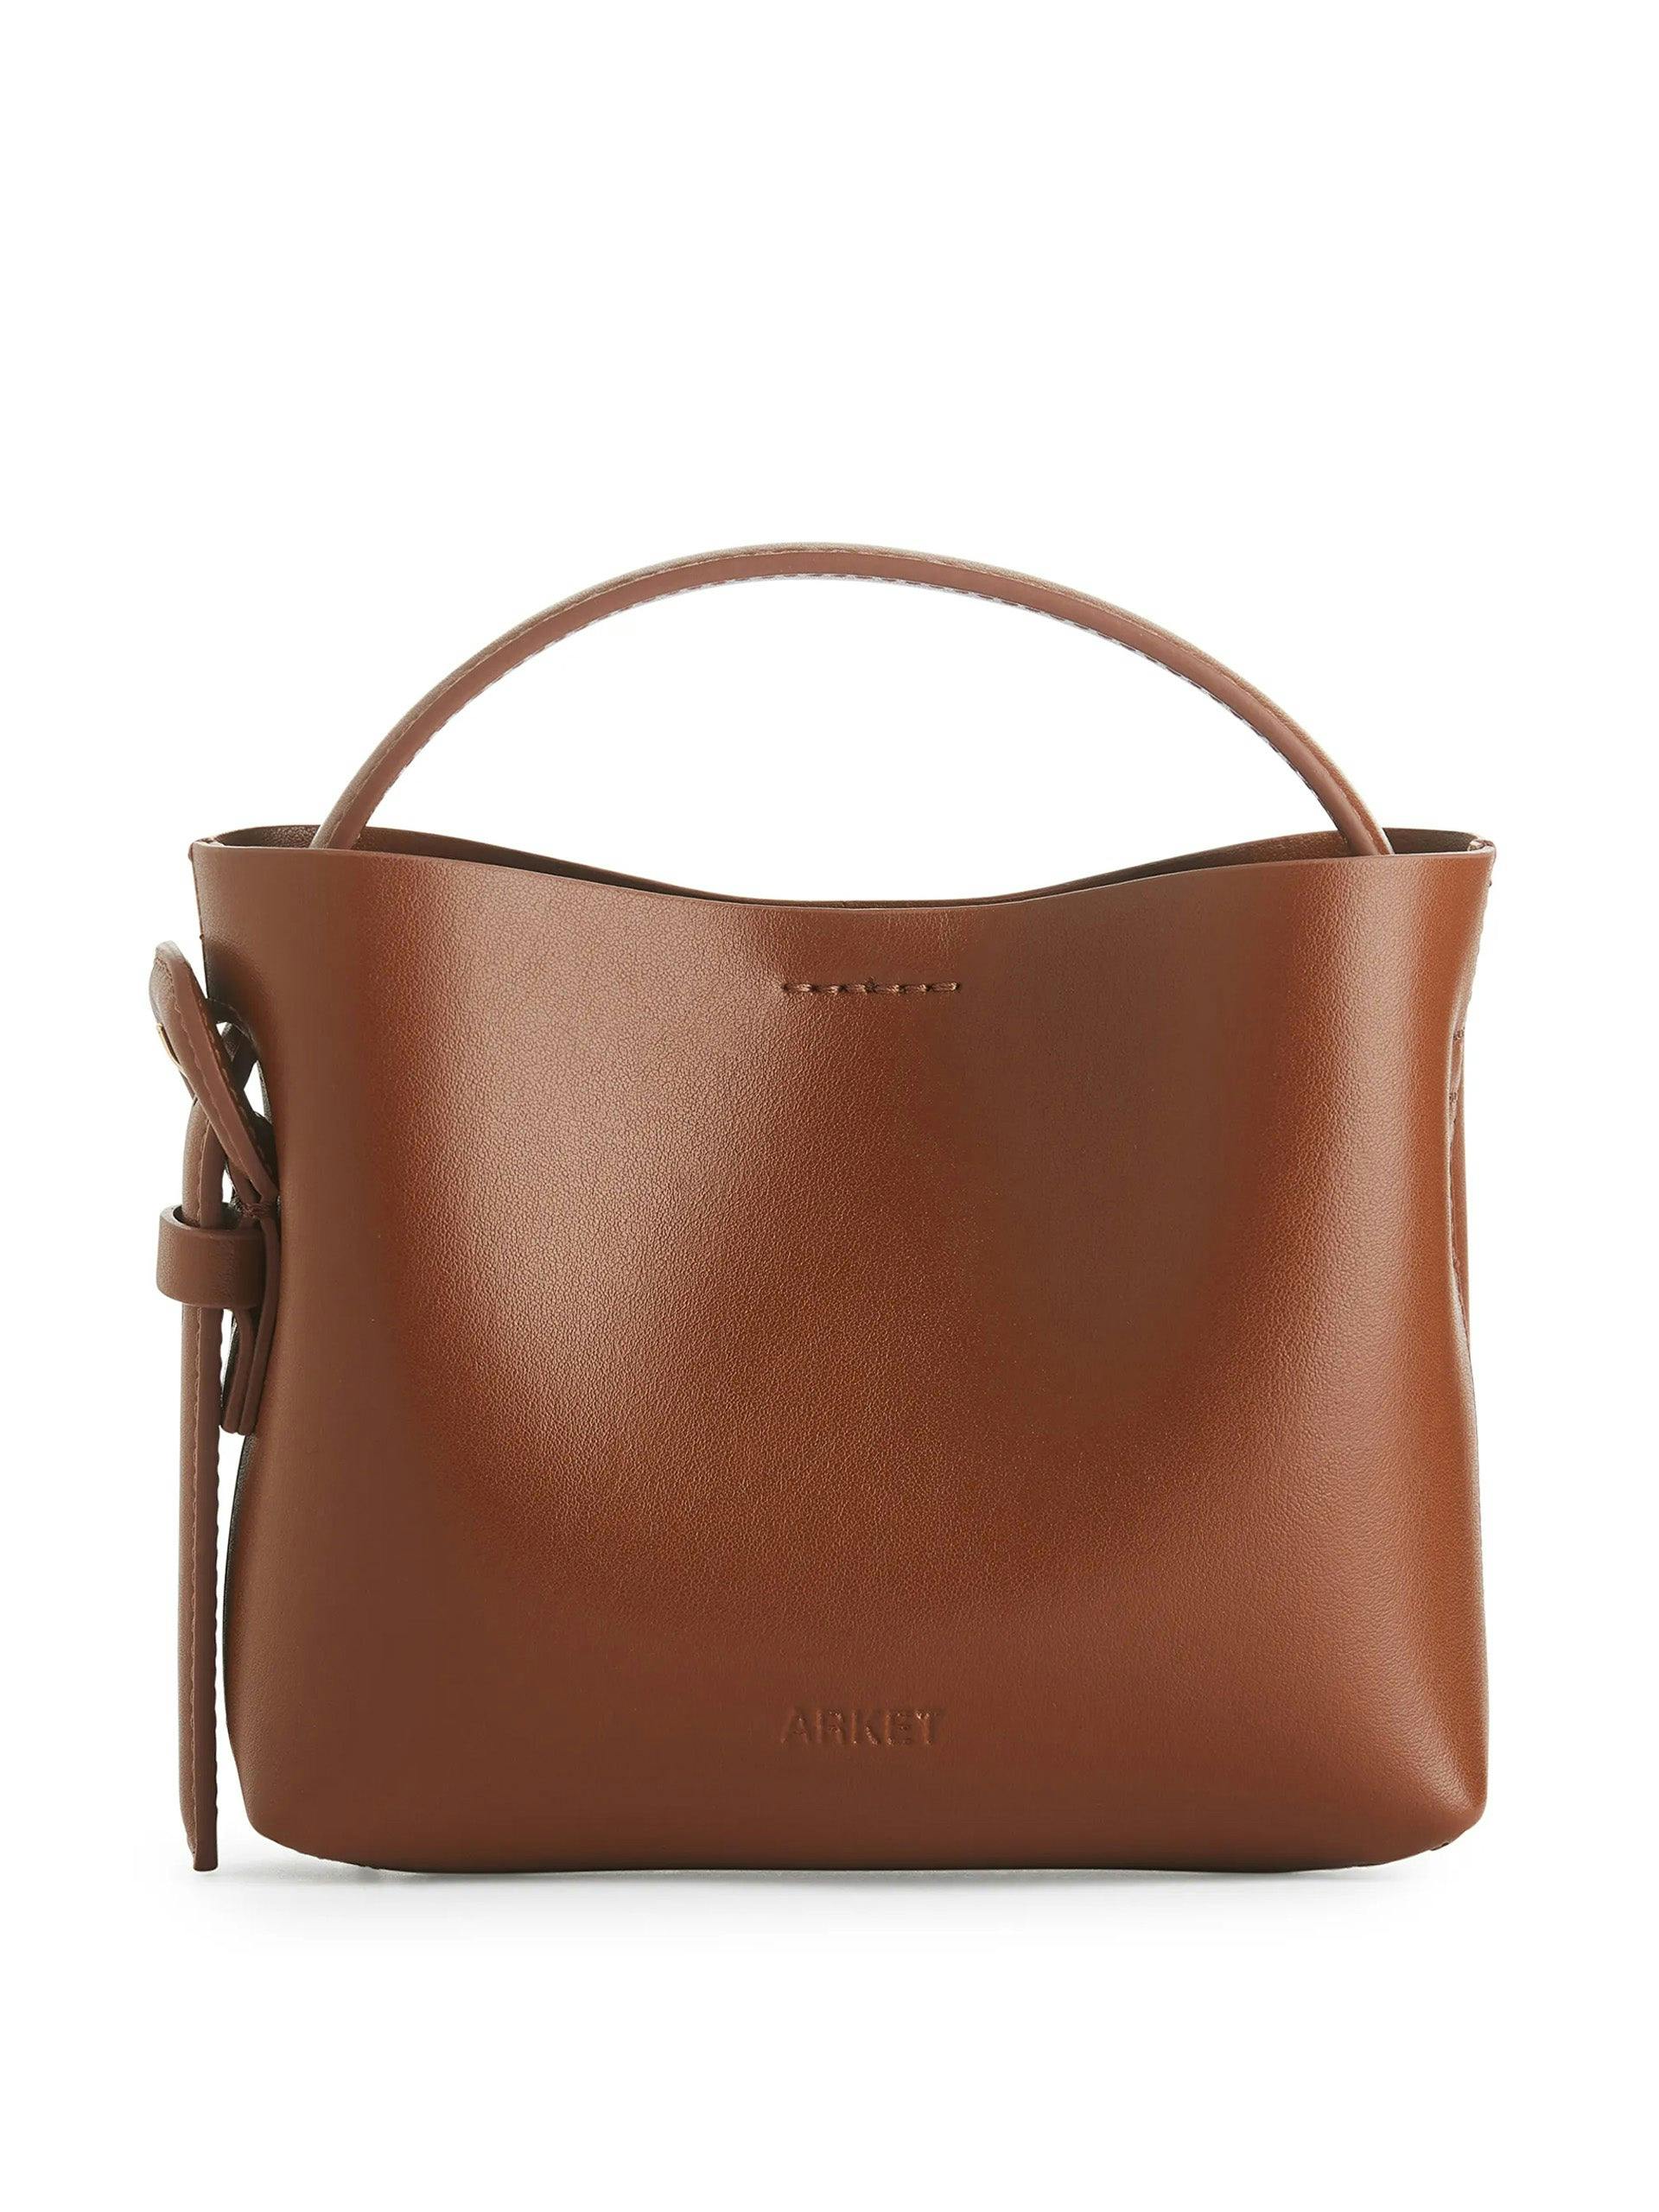 Mini brown leather bag